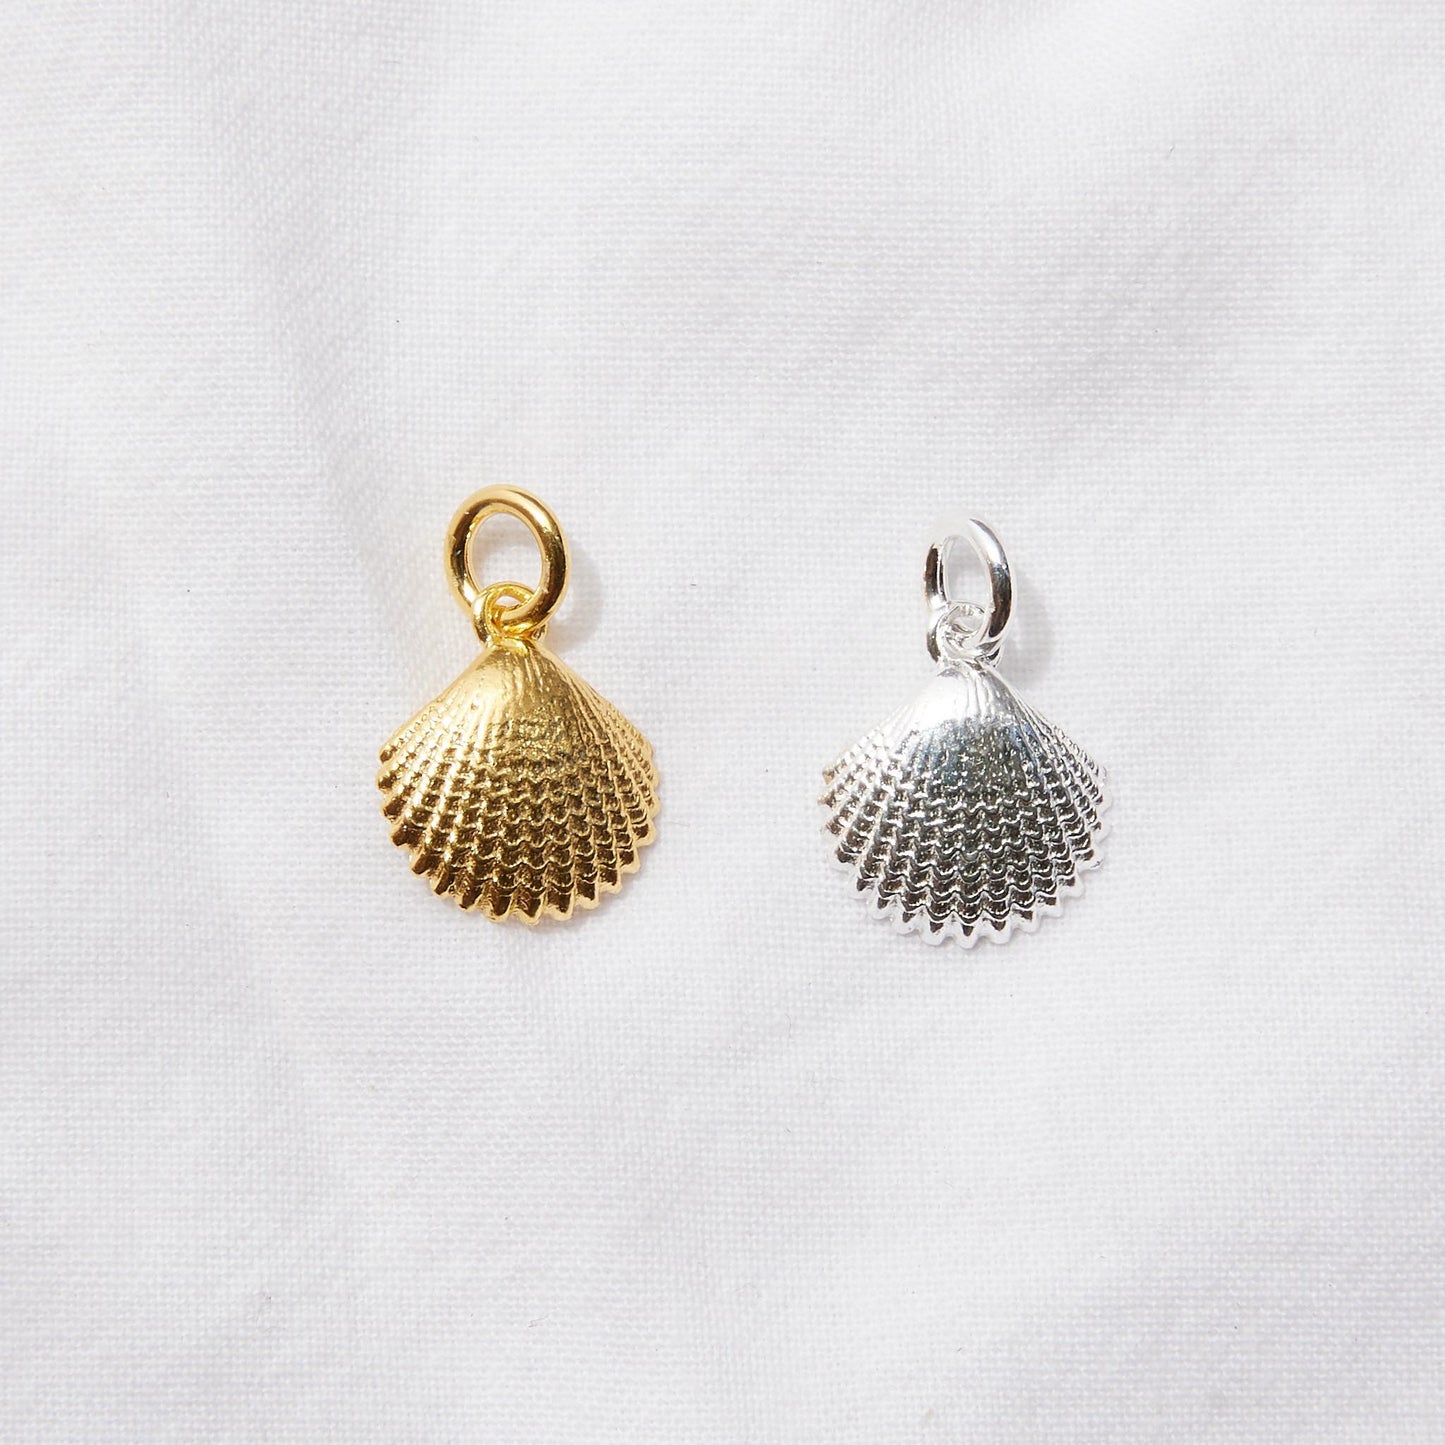 Seashell pendant